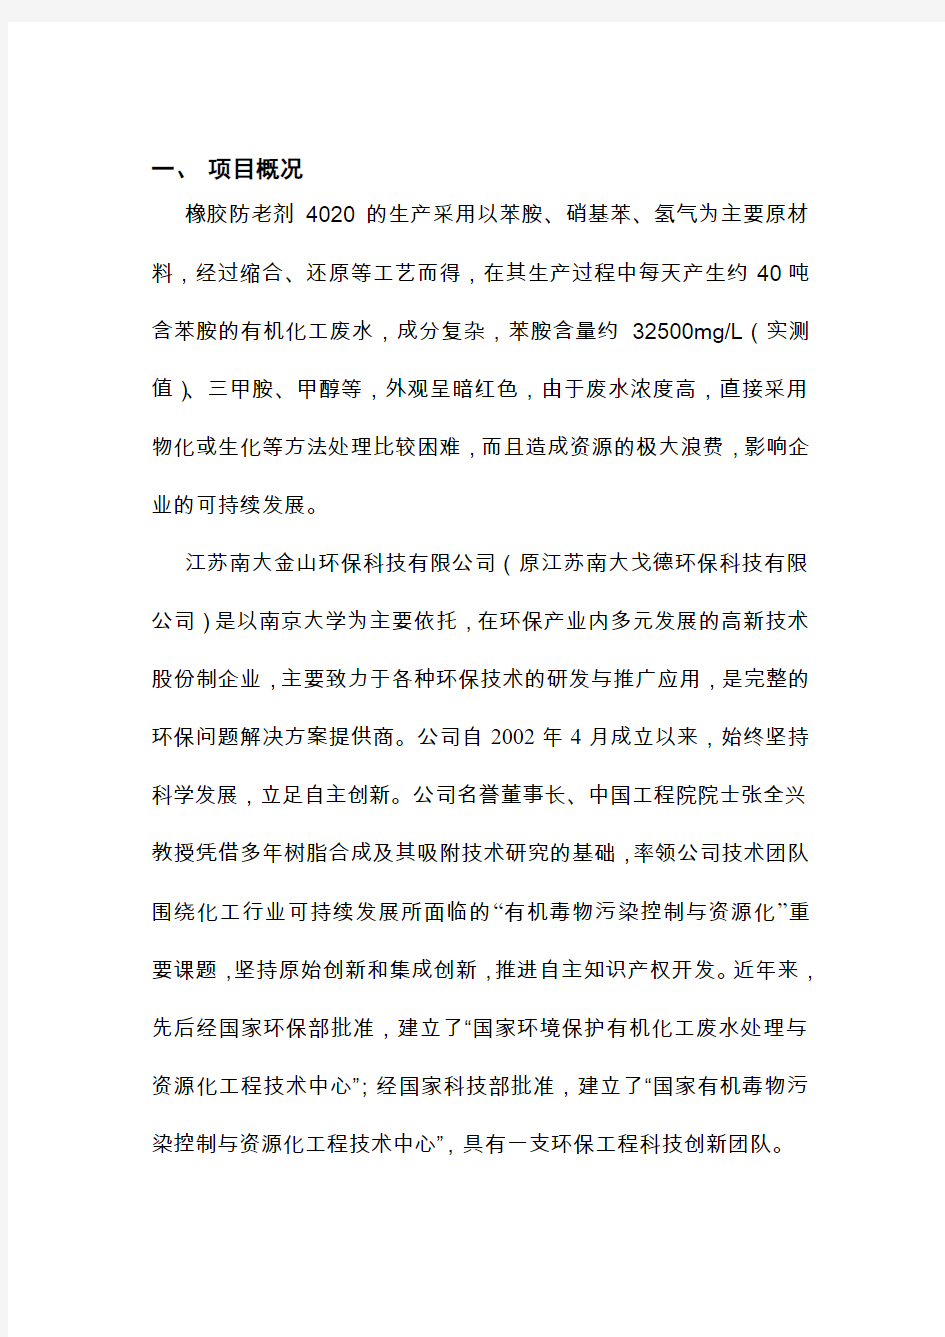 江苏南大环保科技有限公司处理苯胺方案资料